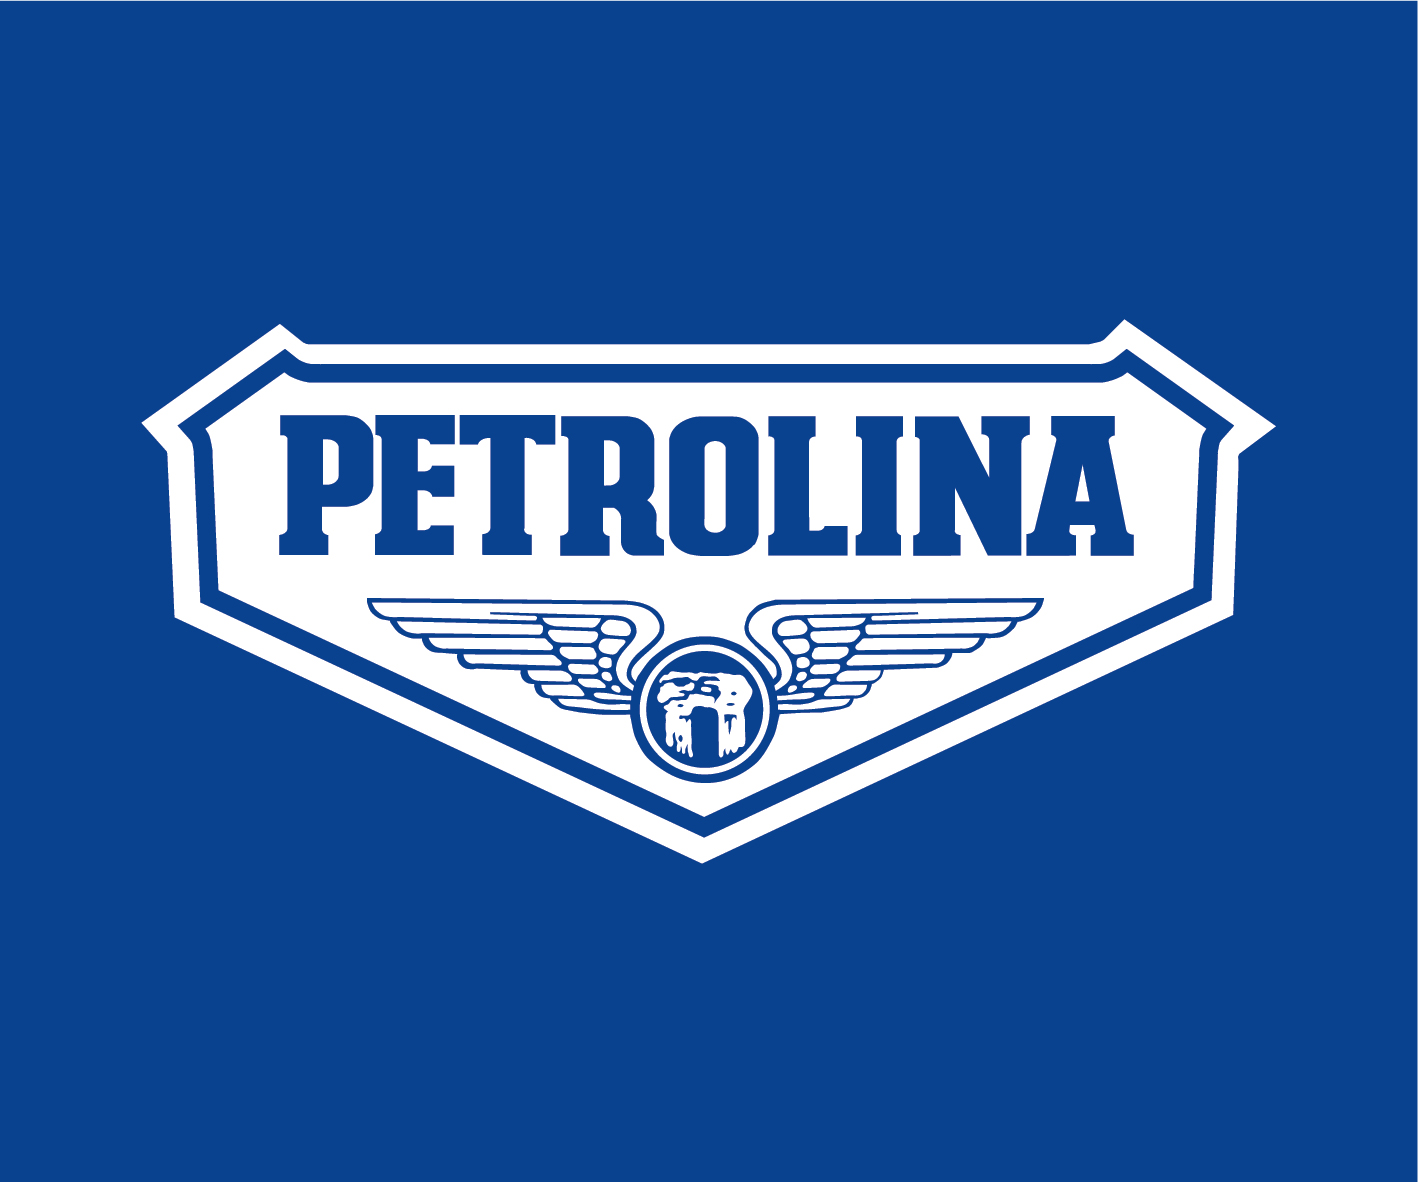 Petrolina logo border background RGB[10]